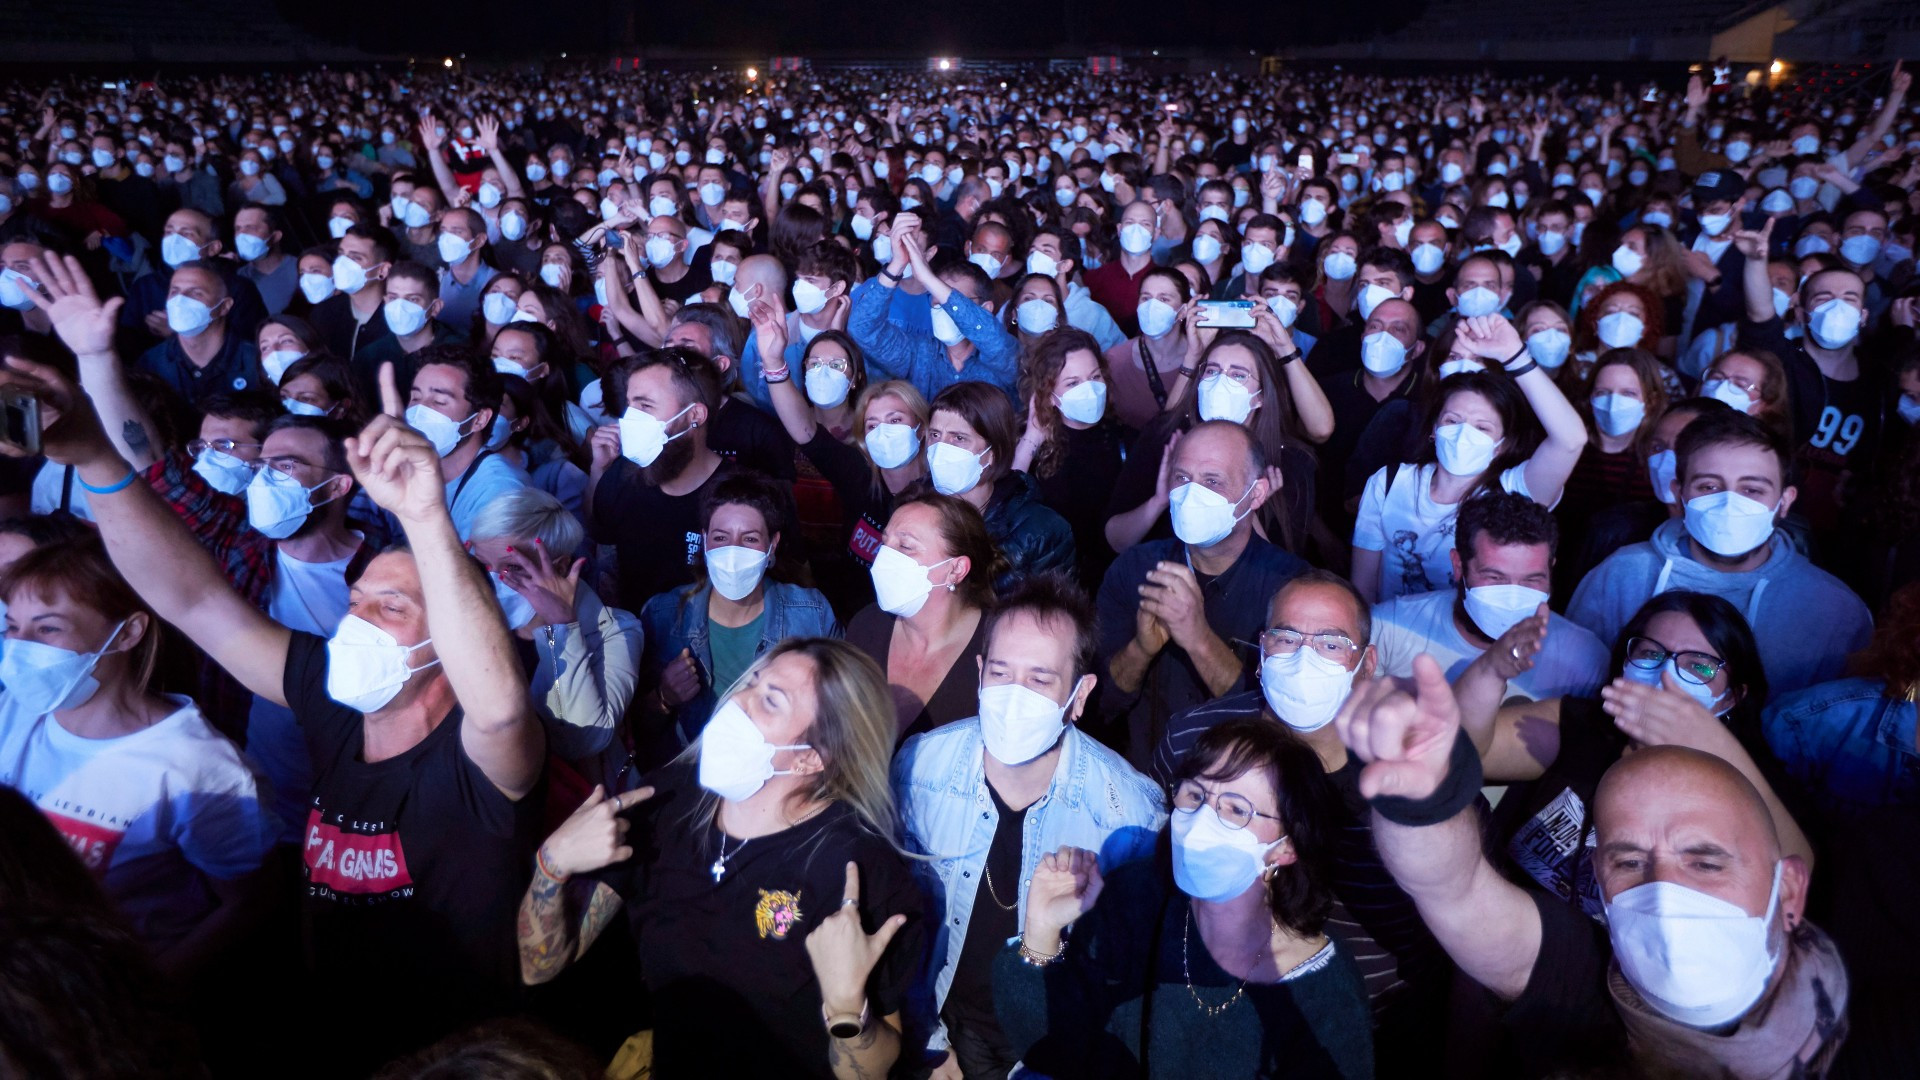 Зрители пришедшие на концерт. Зрители на концерте. Люди на концерте. Люди в масках на концерте. Толпа 500 человек.